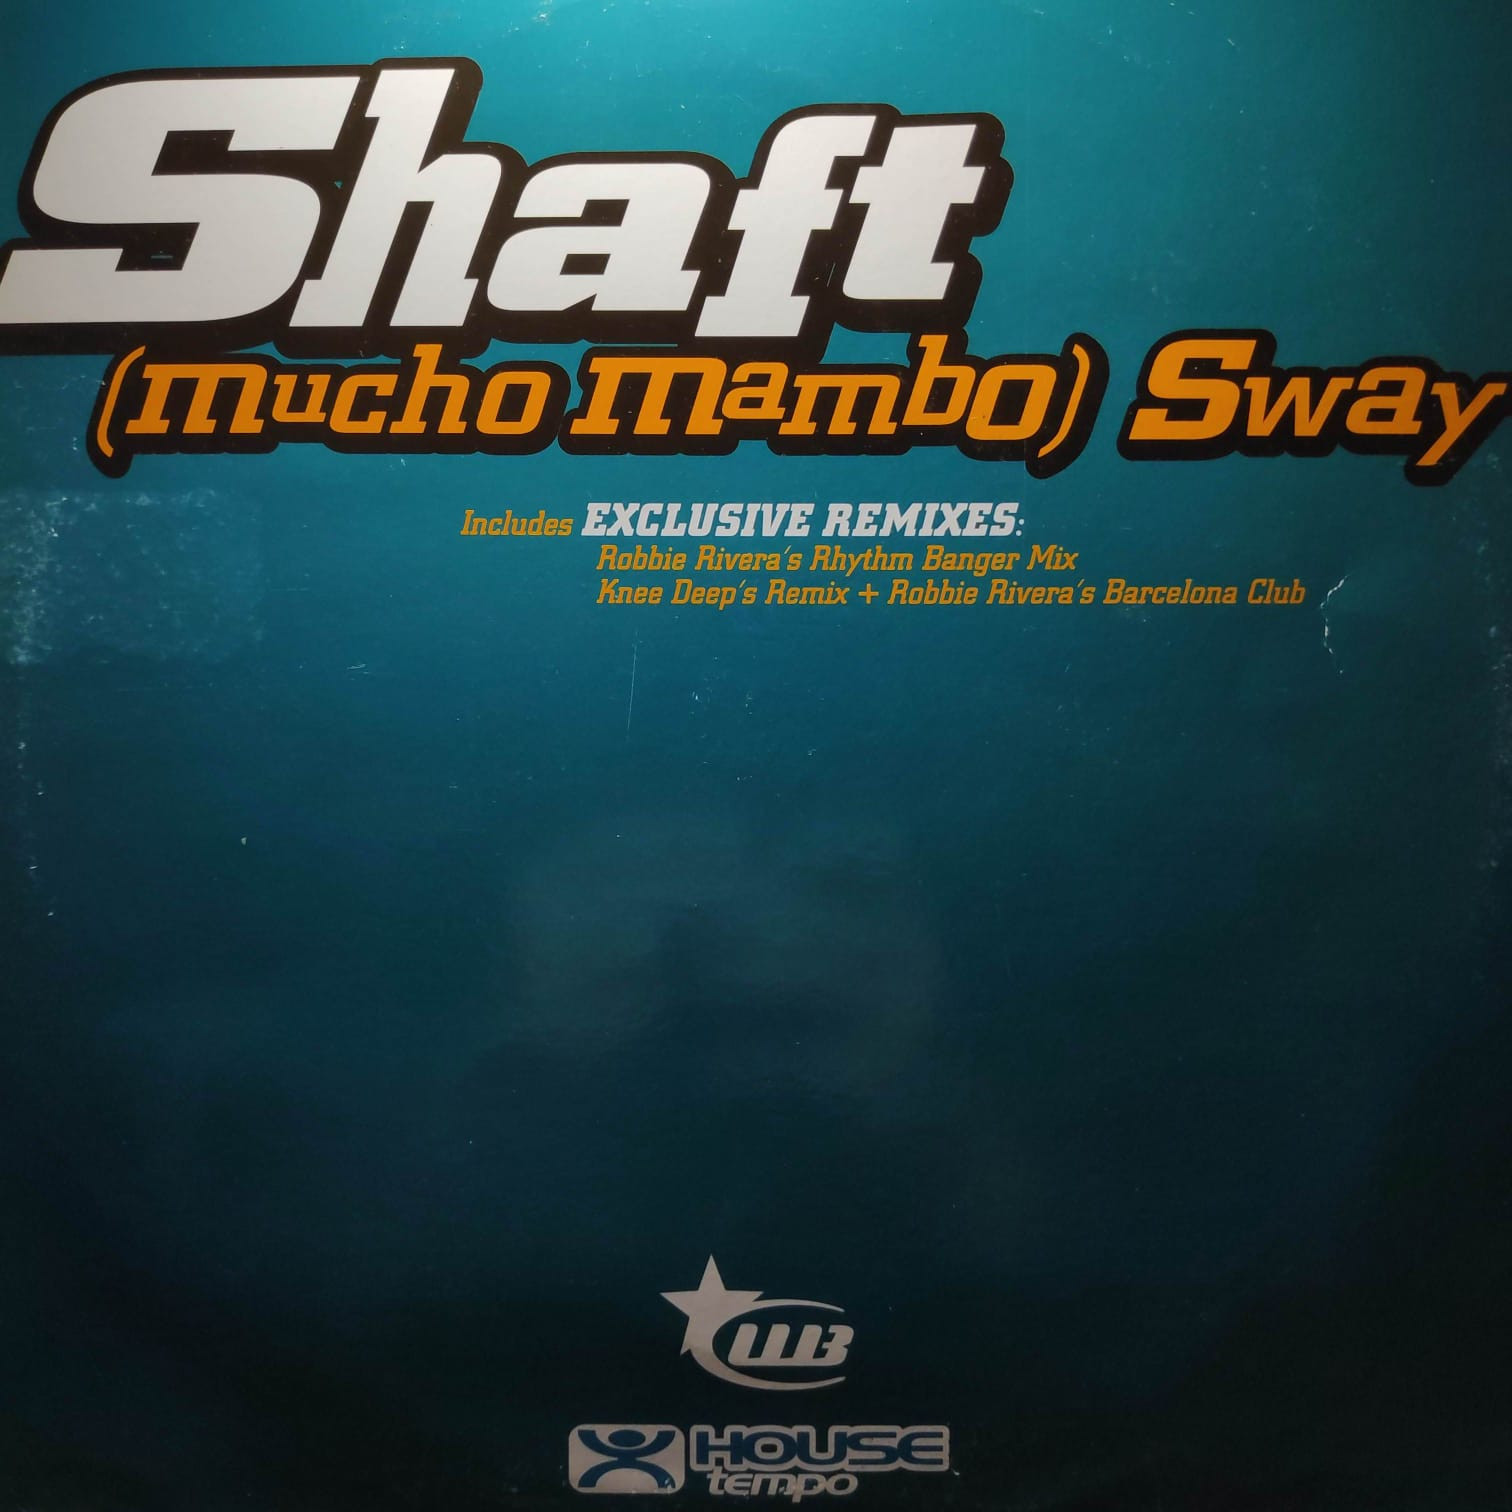 (28651) Shaft ‎– (Mucho Mambo) Sway